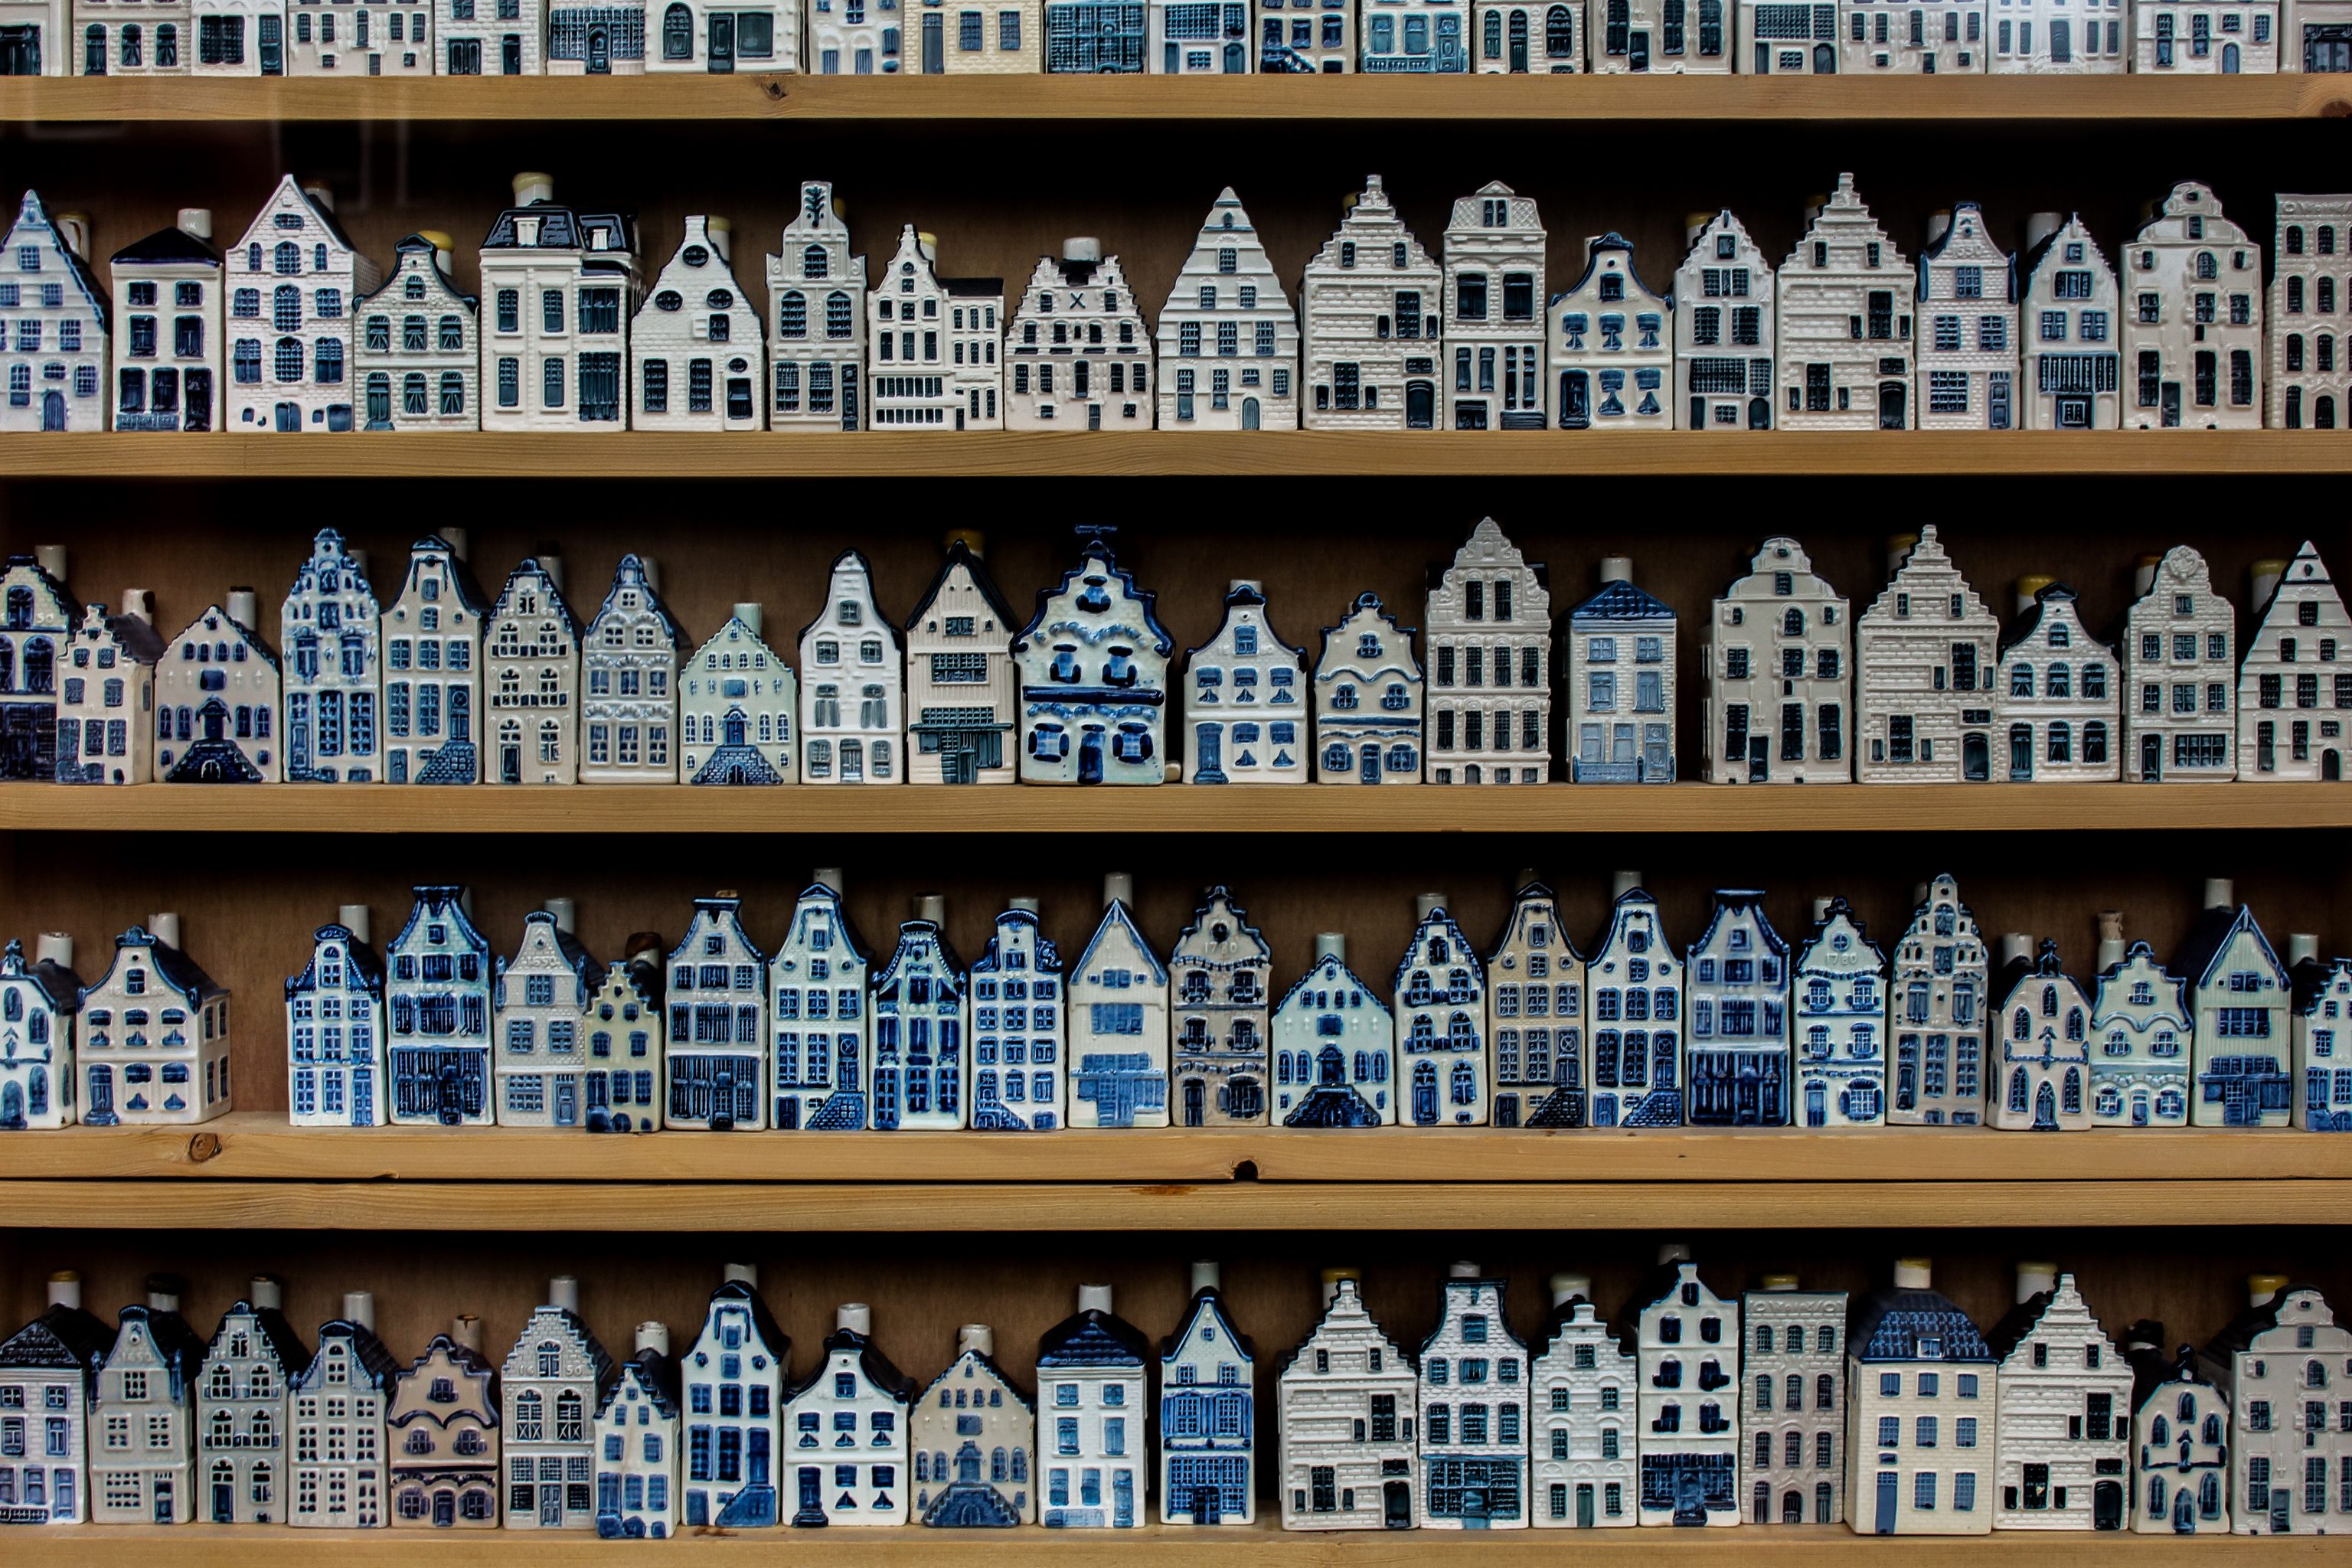 KLM lancerer miniaturehus nr. 100 | Her er alt du skal vide om de små huse